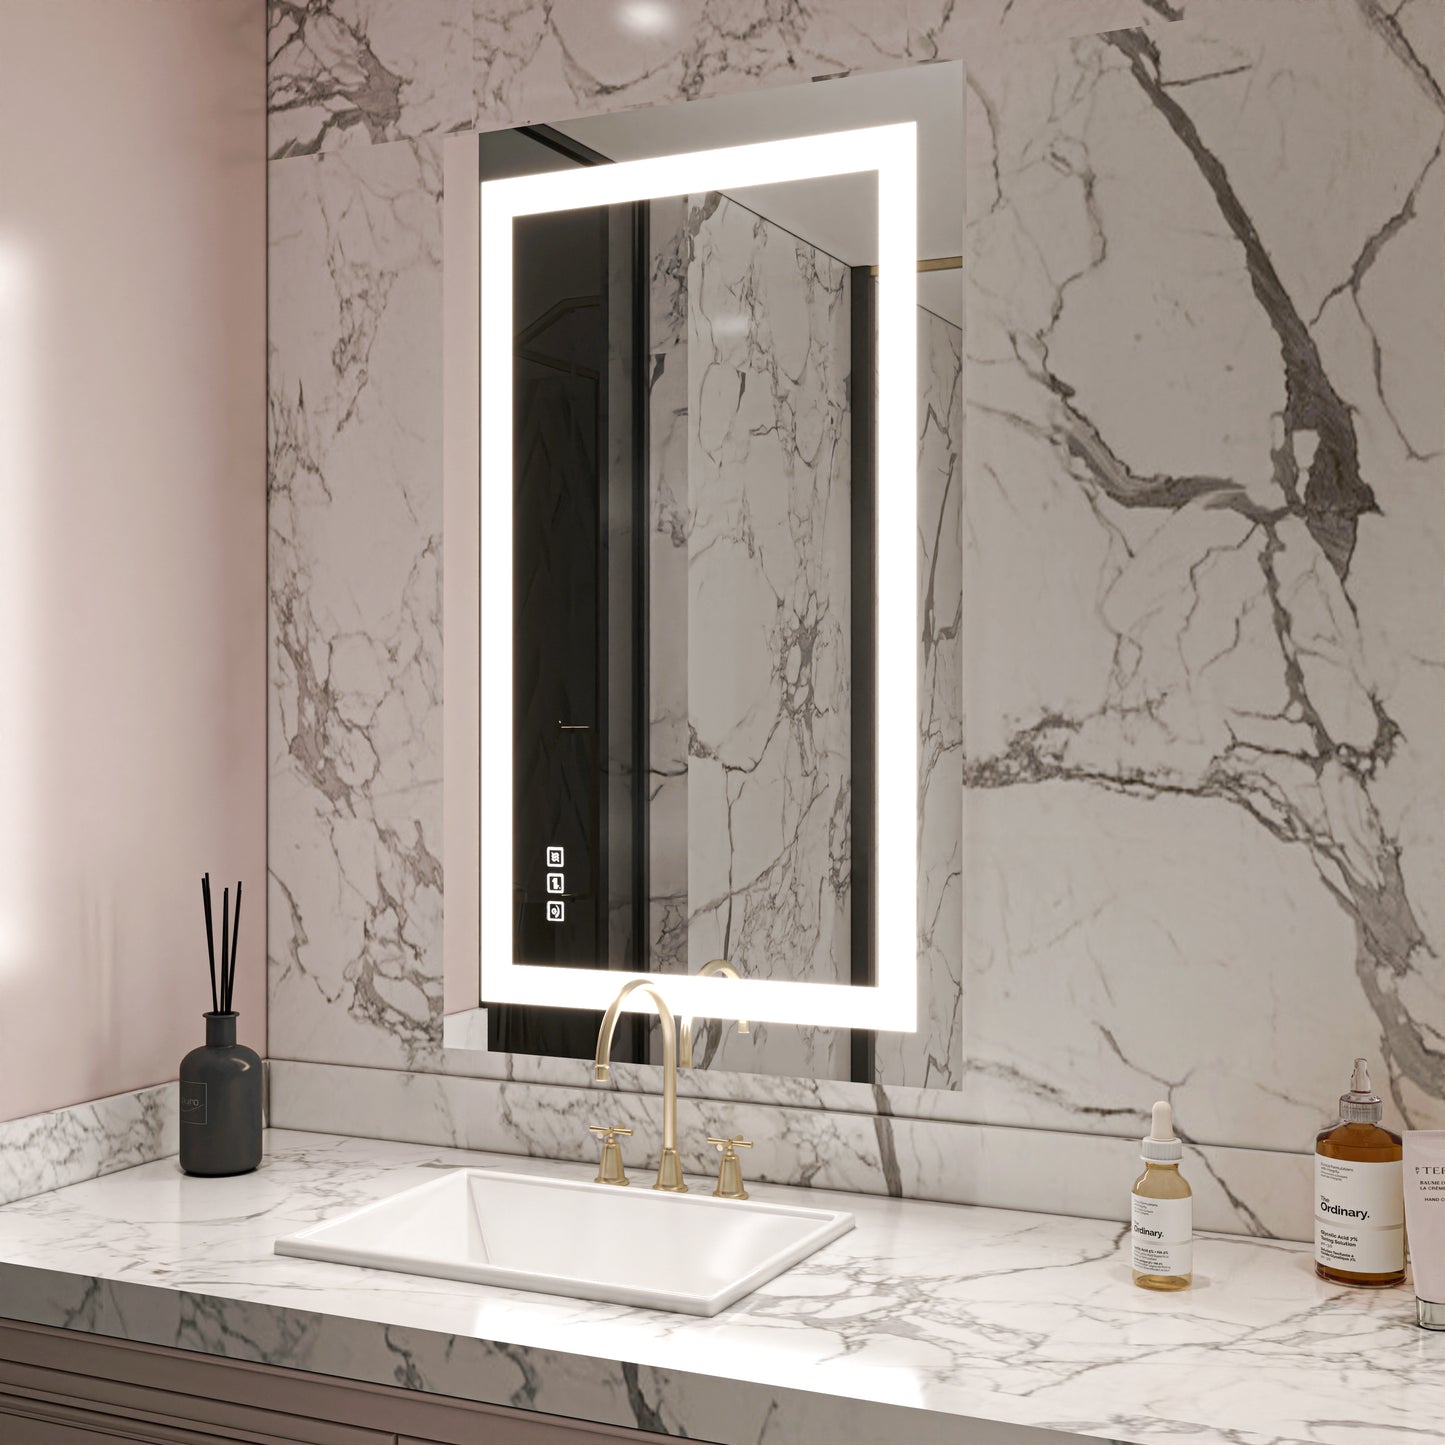 Waterpar® 40 in. W x 24 in. H LED Rectangular Frameless Anti-Fog Bathroom Mirror Front Light